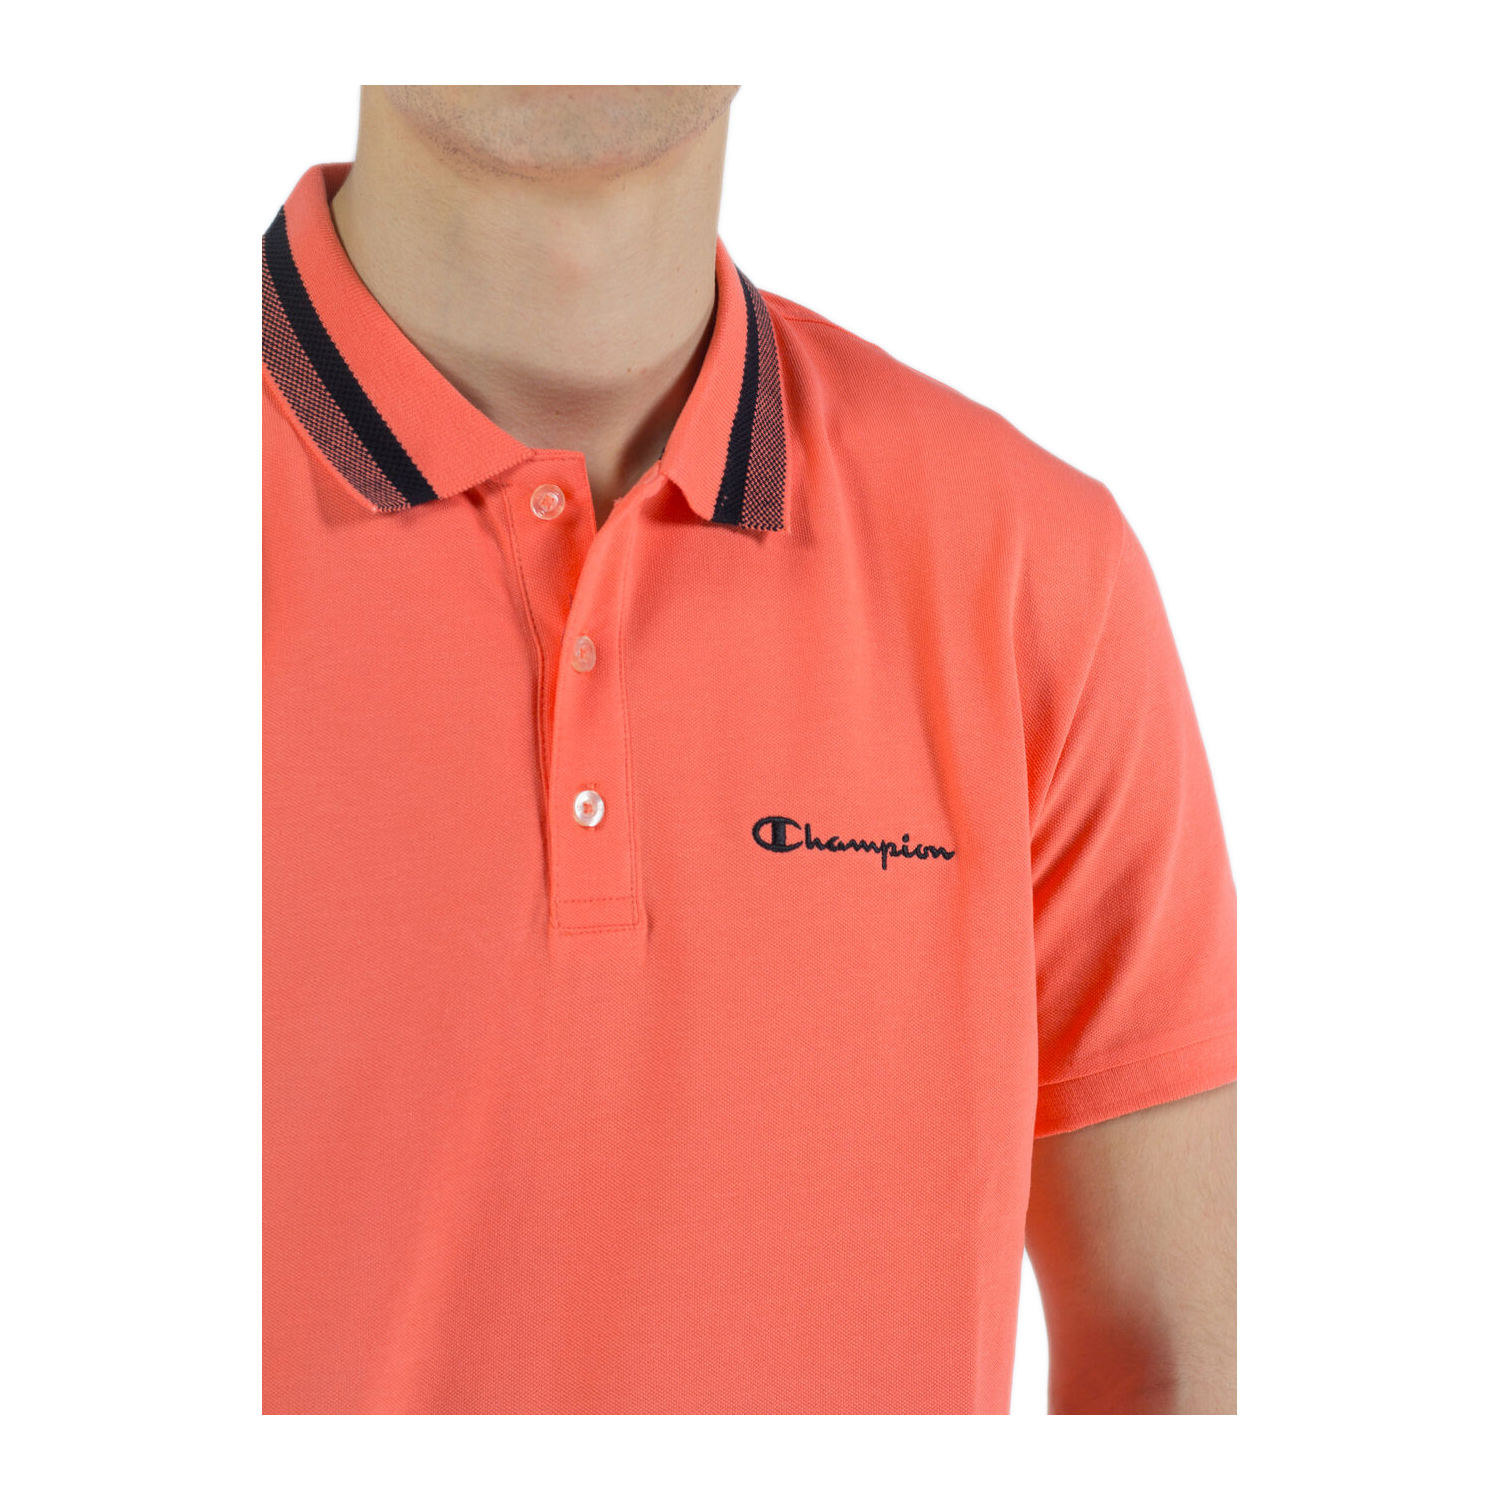 Champion Poloshirt mit Streifendetails am Kragen orange (ABVERKAUF)